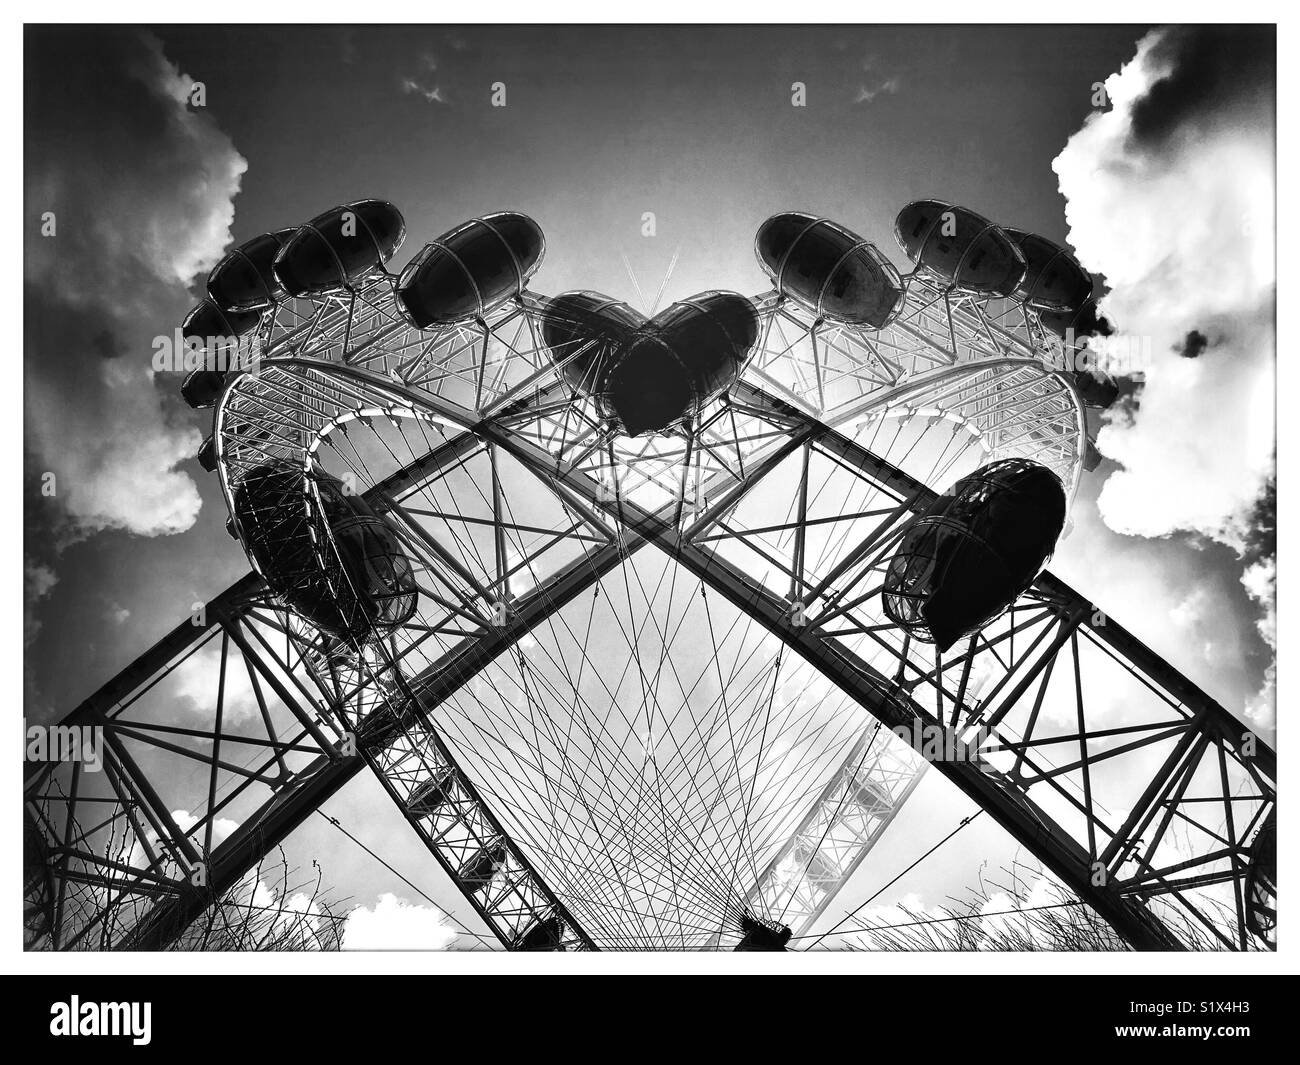 Schwarz und Weiß Double Exposure Effekt des London Eye, reflektiert eine Herzform gegen einen bewölkten Himmel zu machen. Stockfoto